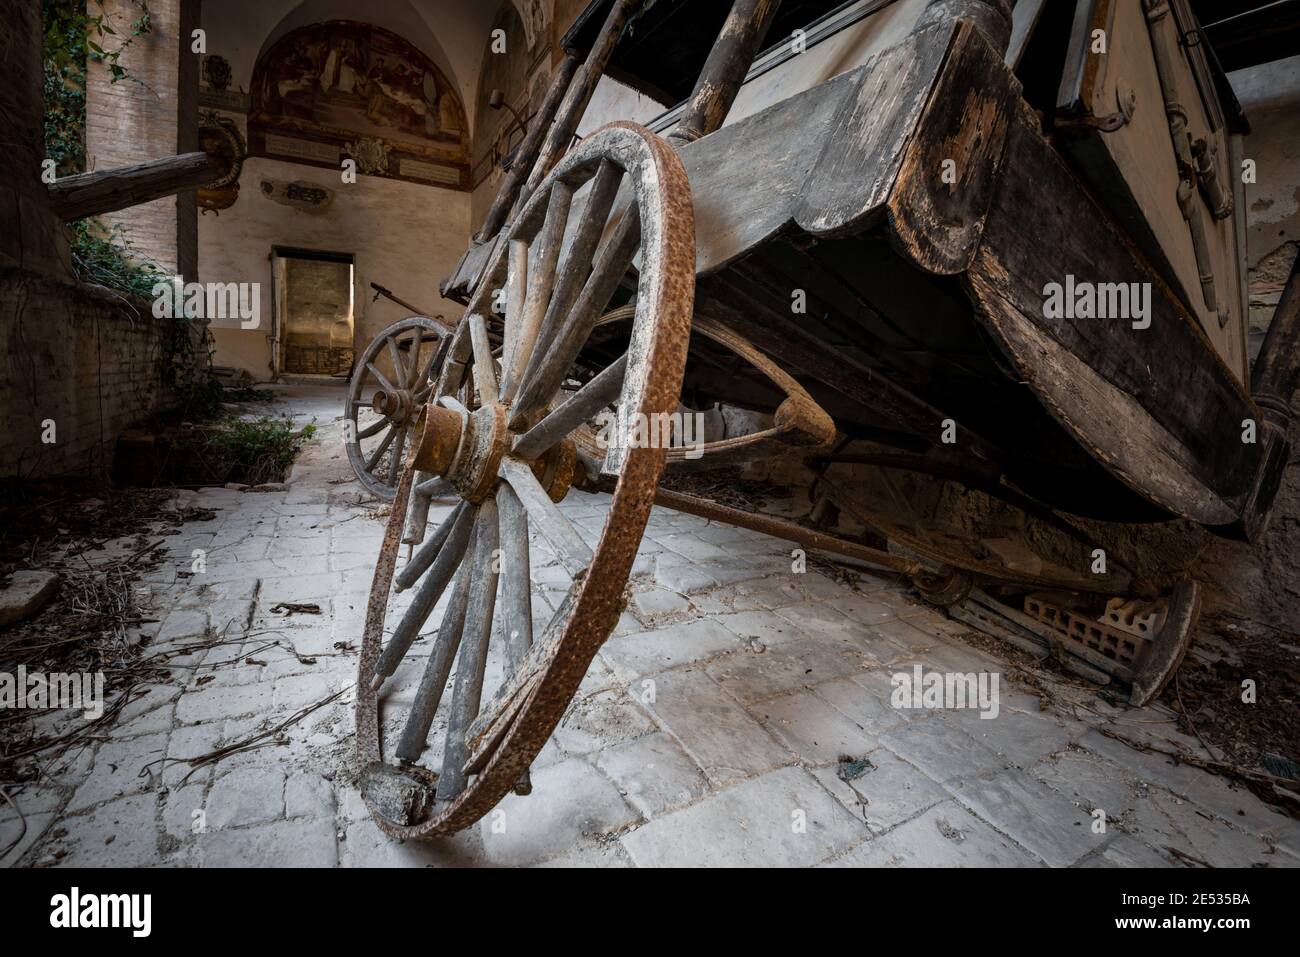 Primo piano di un'antica carrozza trainata da cavalli, sdraiata in un antico chiostro italiano abbandonato Foto Stock